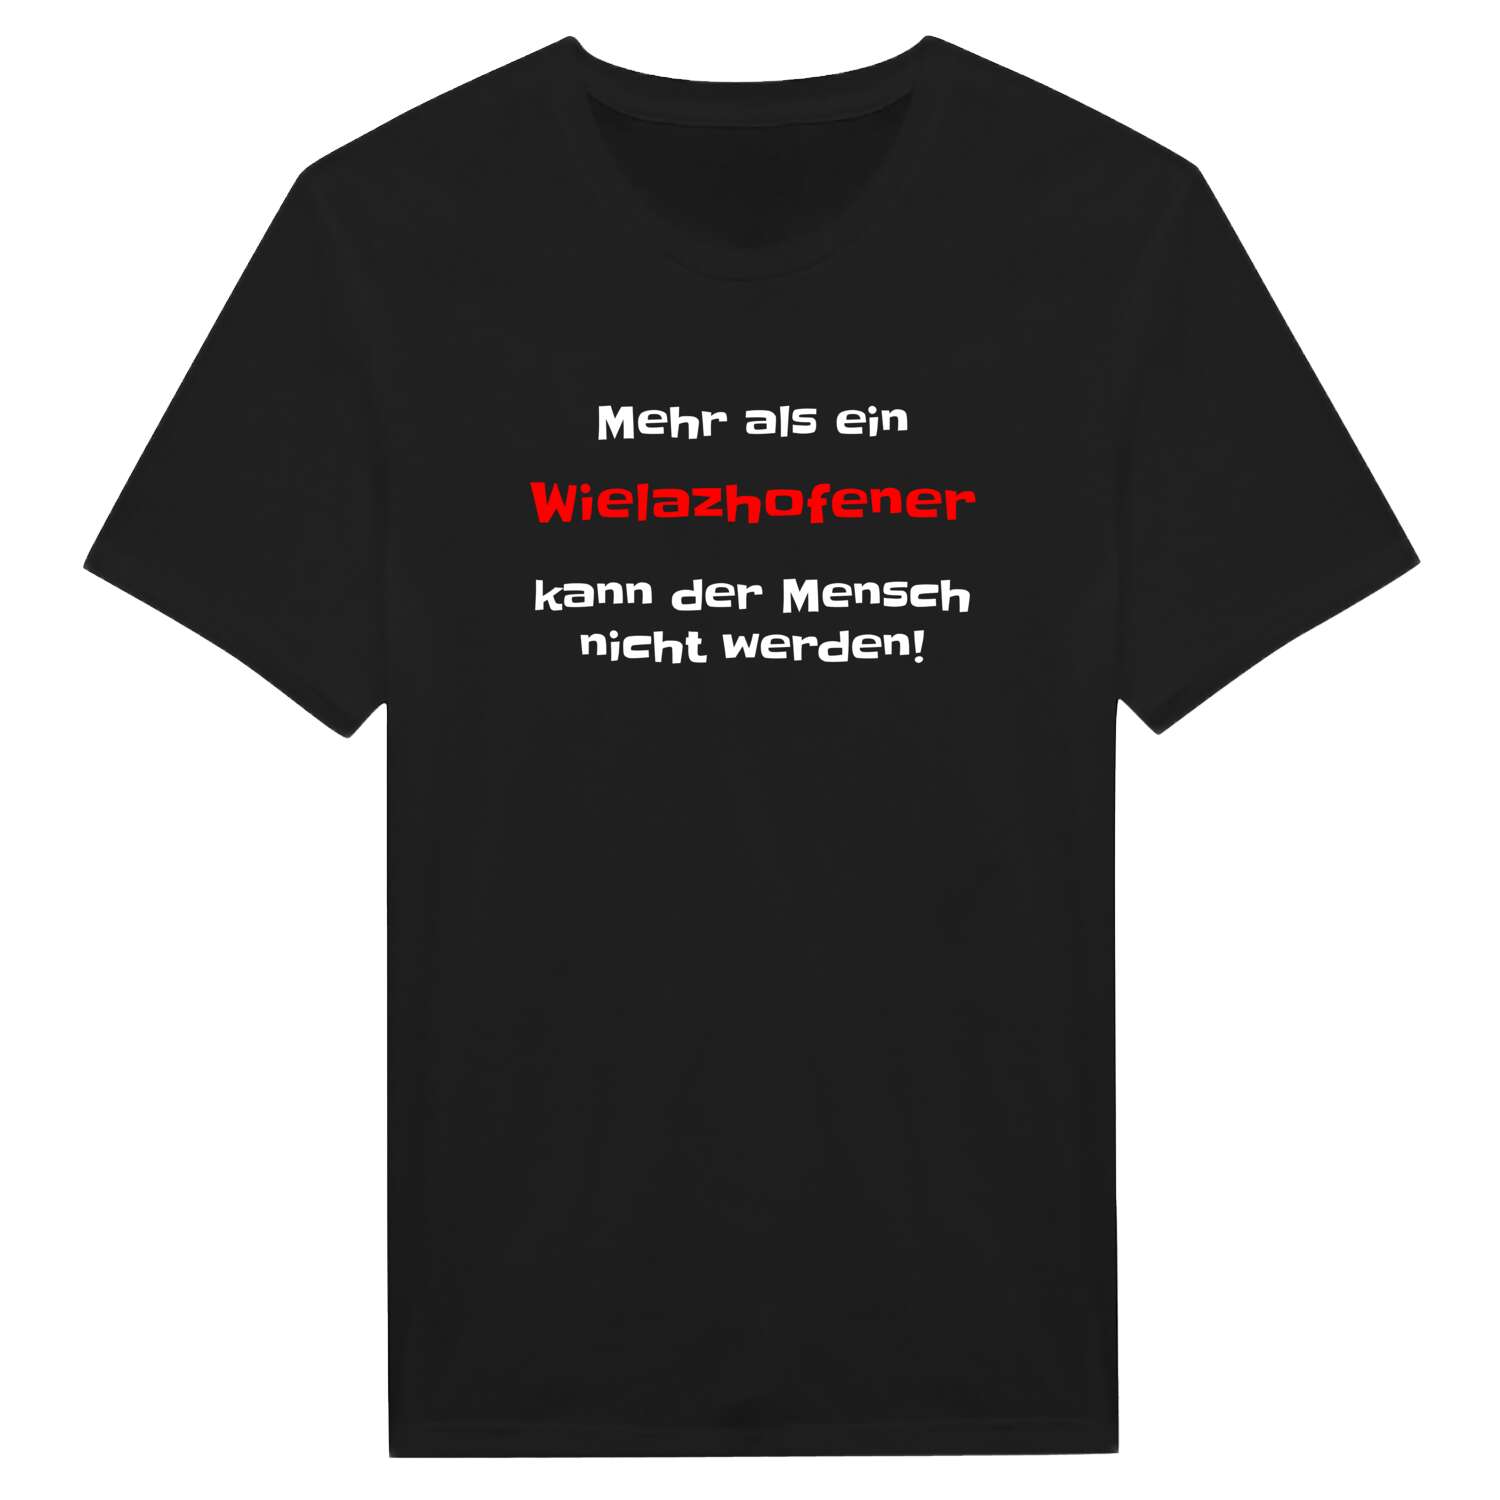 Wielazhofen T-Shirt »Mehr als ein«